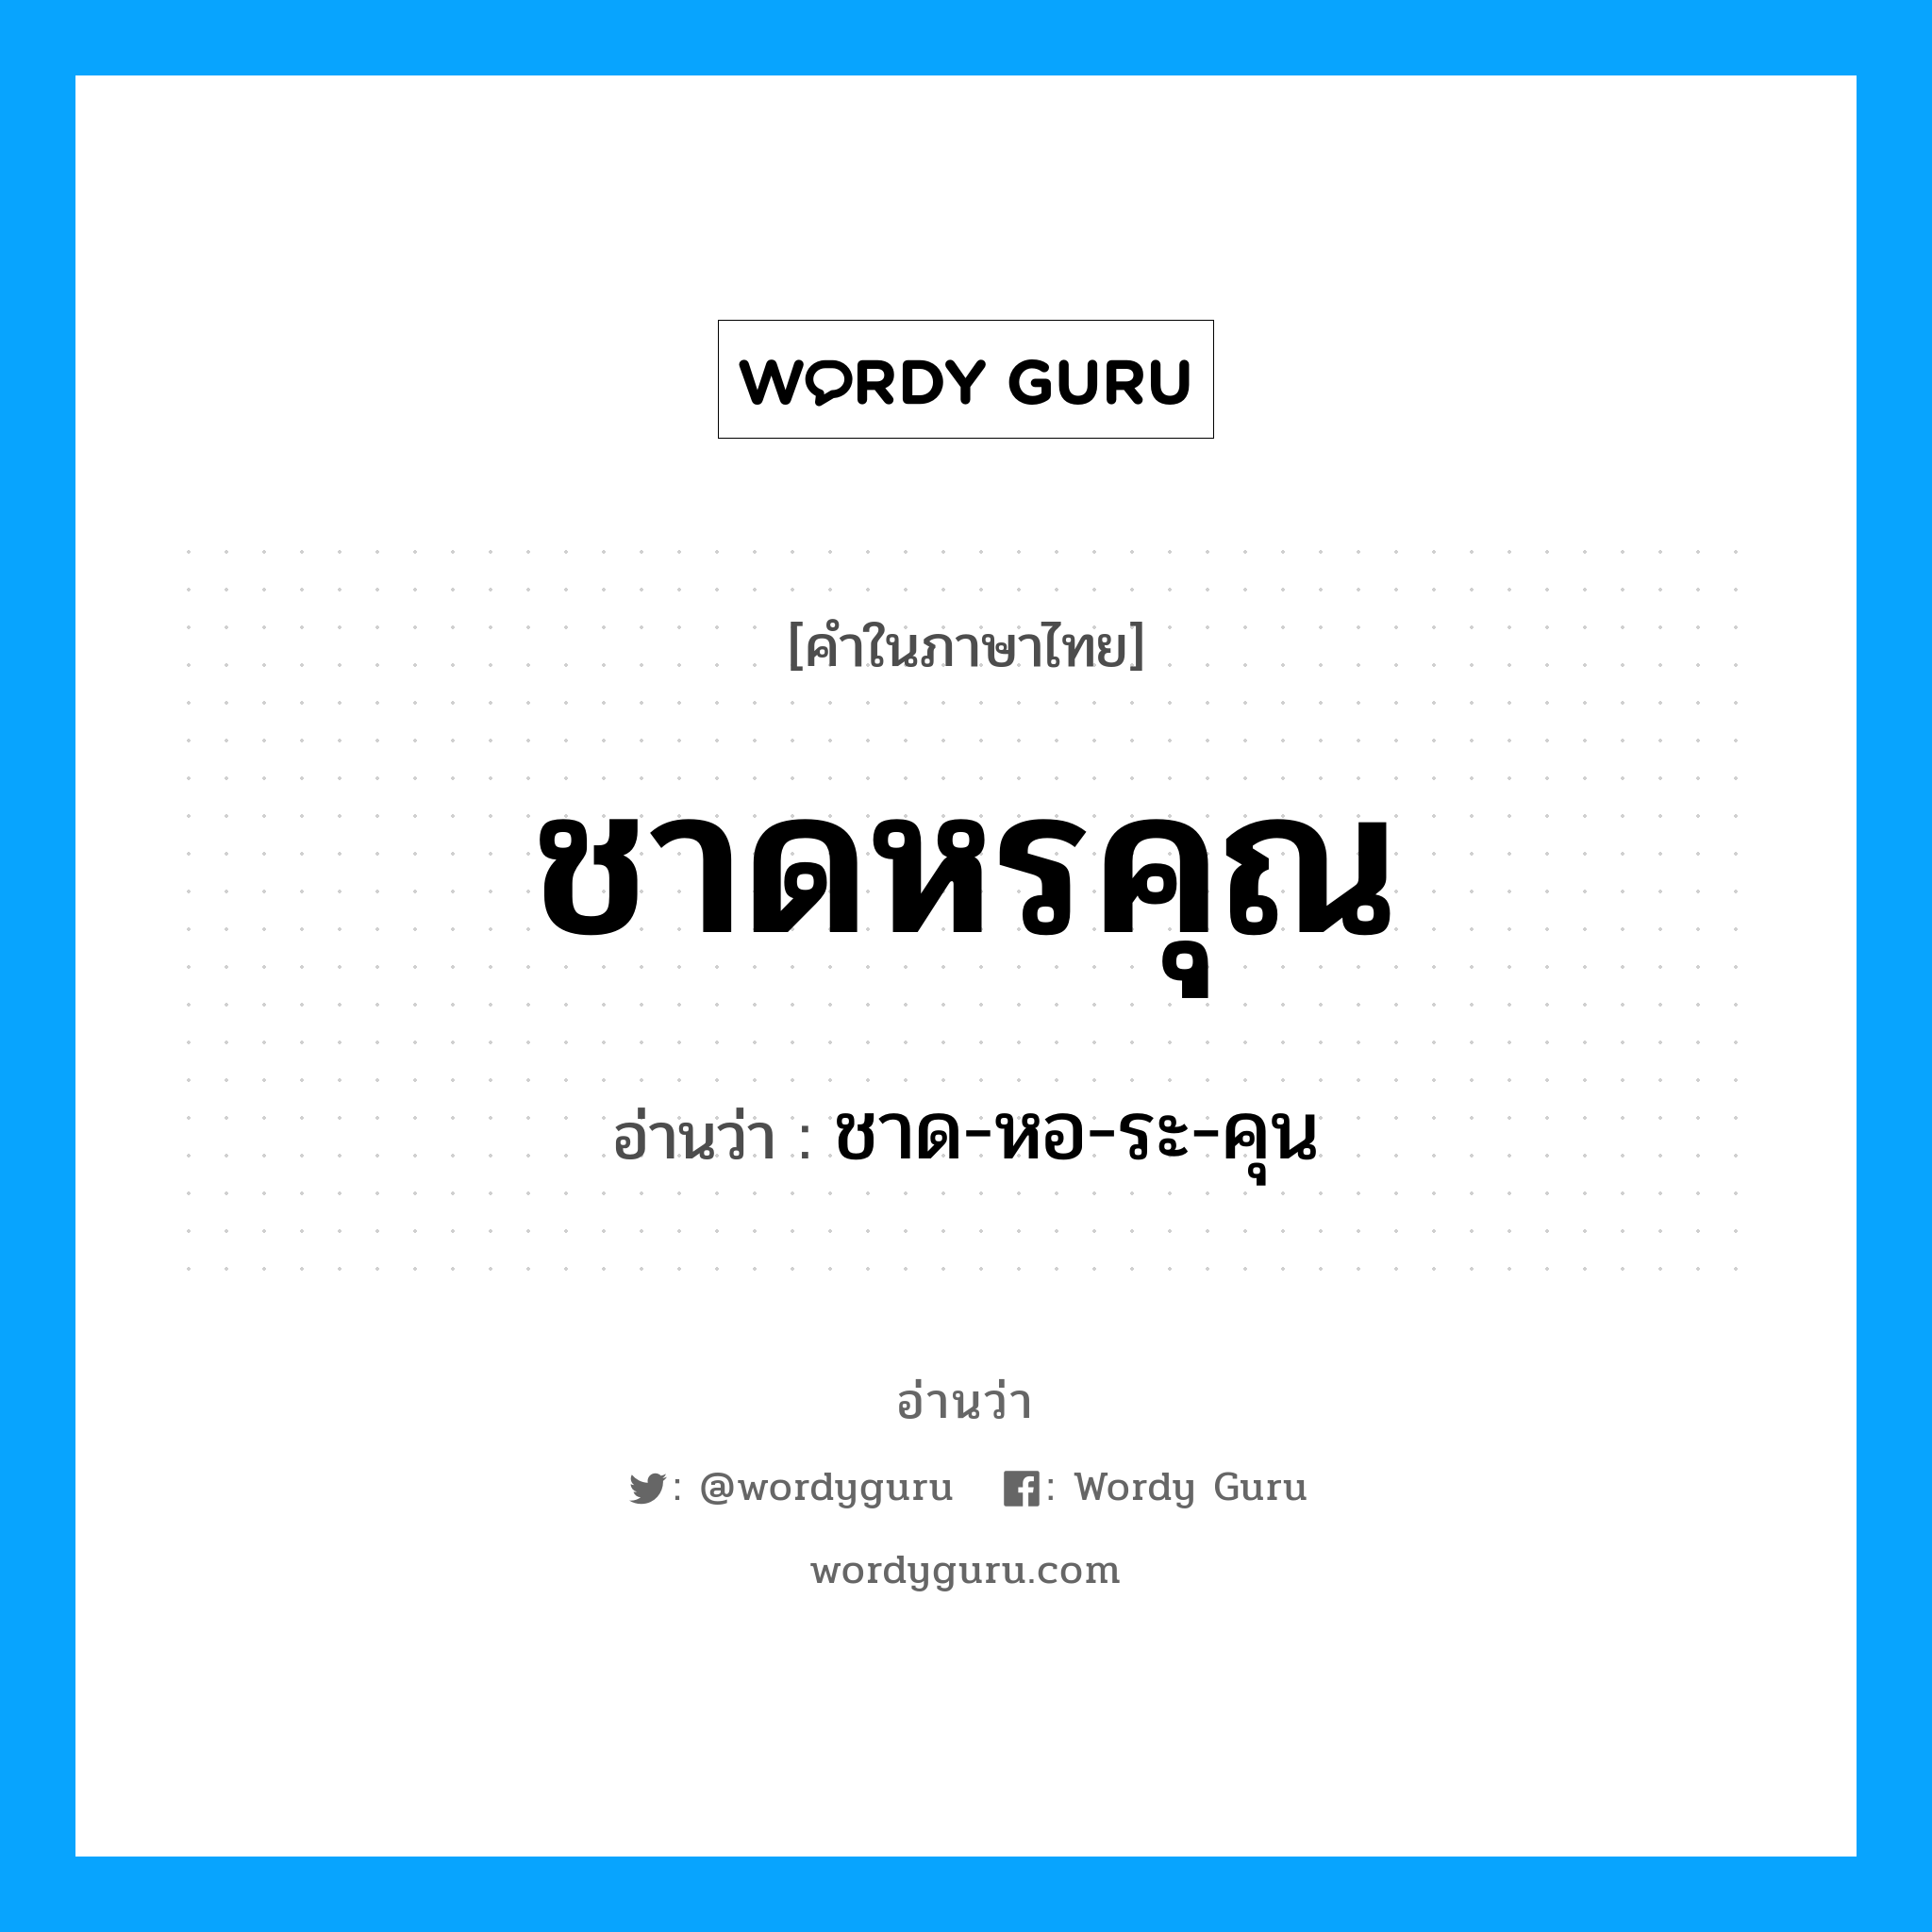 ชาด-หอ-ระ-คุน เป็นคำอ่านของคำไหน?, คำในภาษาไทย ชาด-หอ-ระ-คุน อ่านว่า ชาดหรคุณ